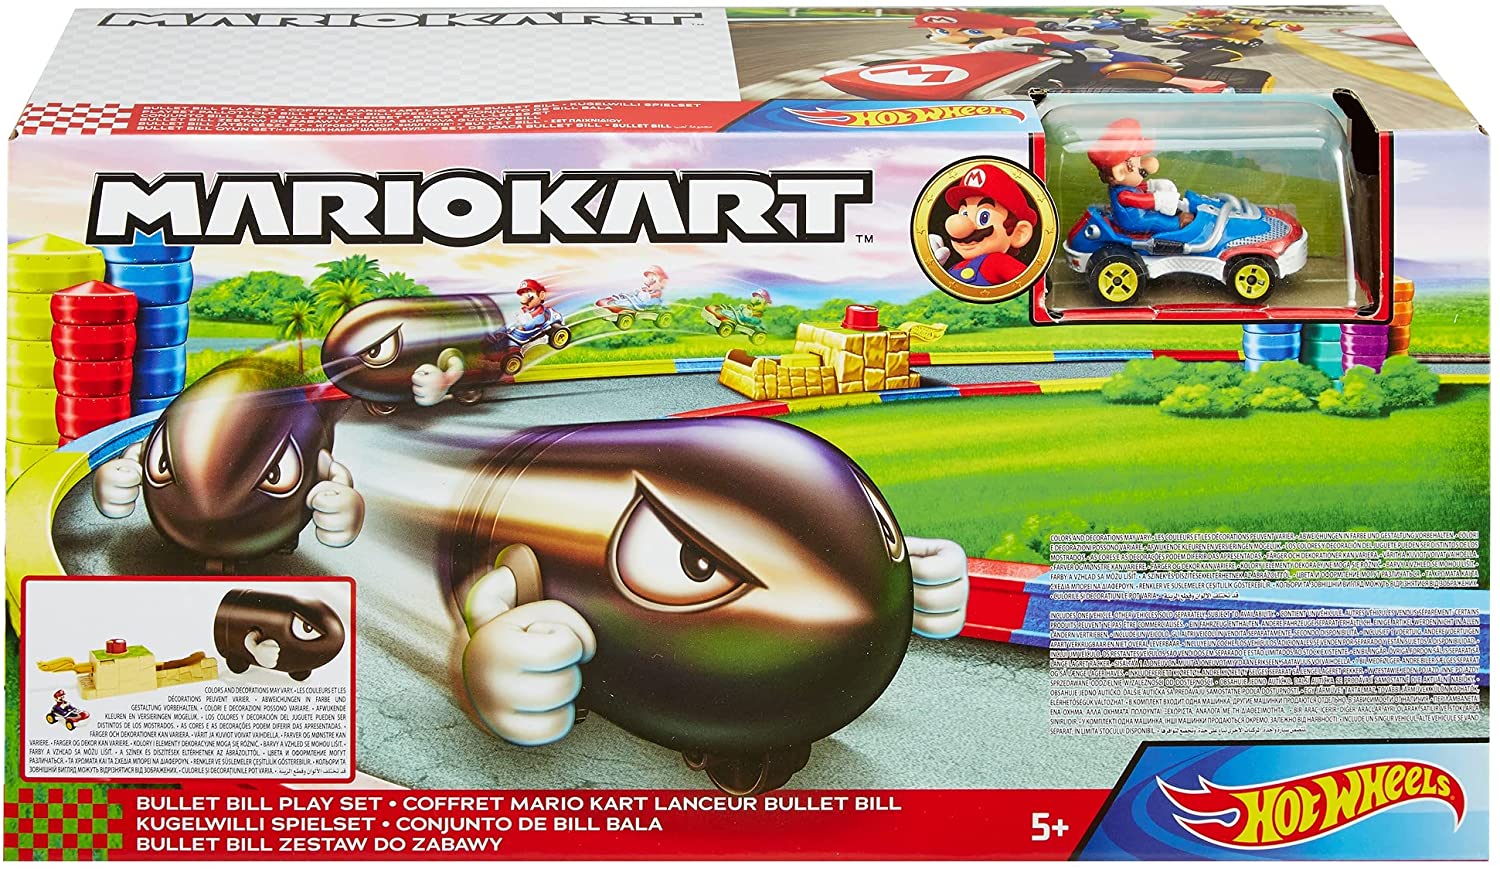 Carro Mattel Hot Wheels Mario Kart Bullet Bill Play Set